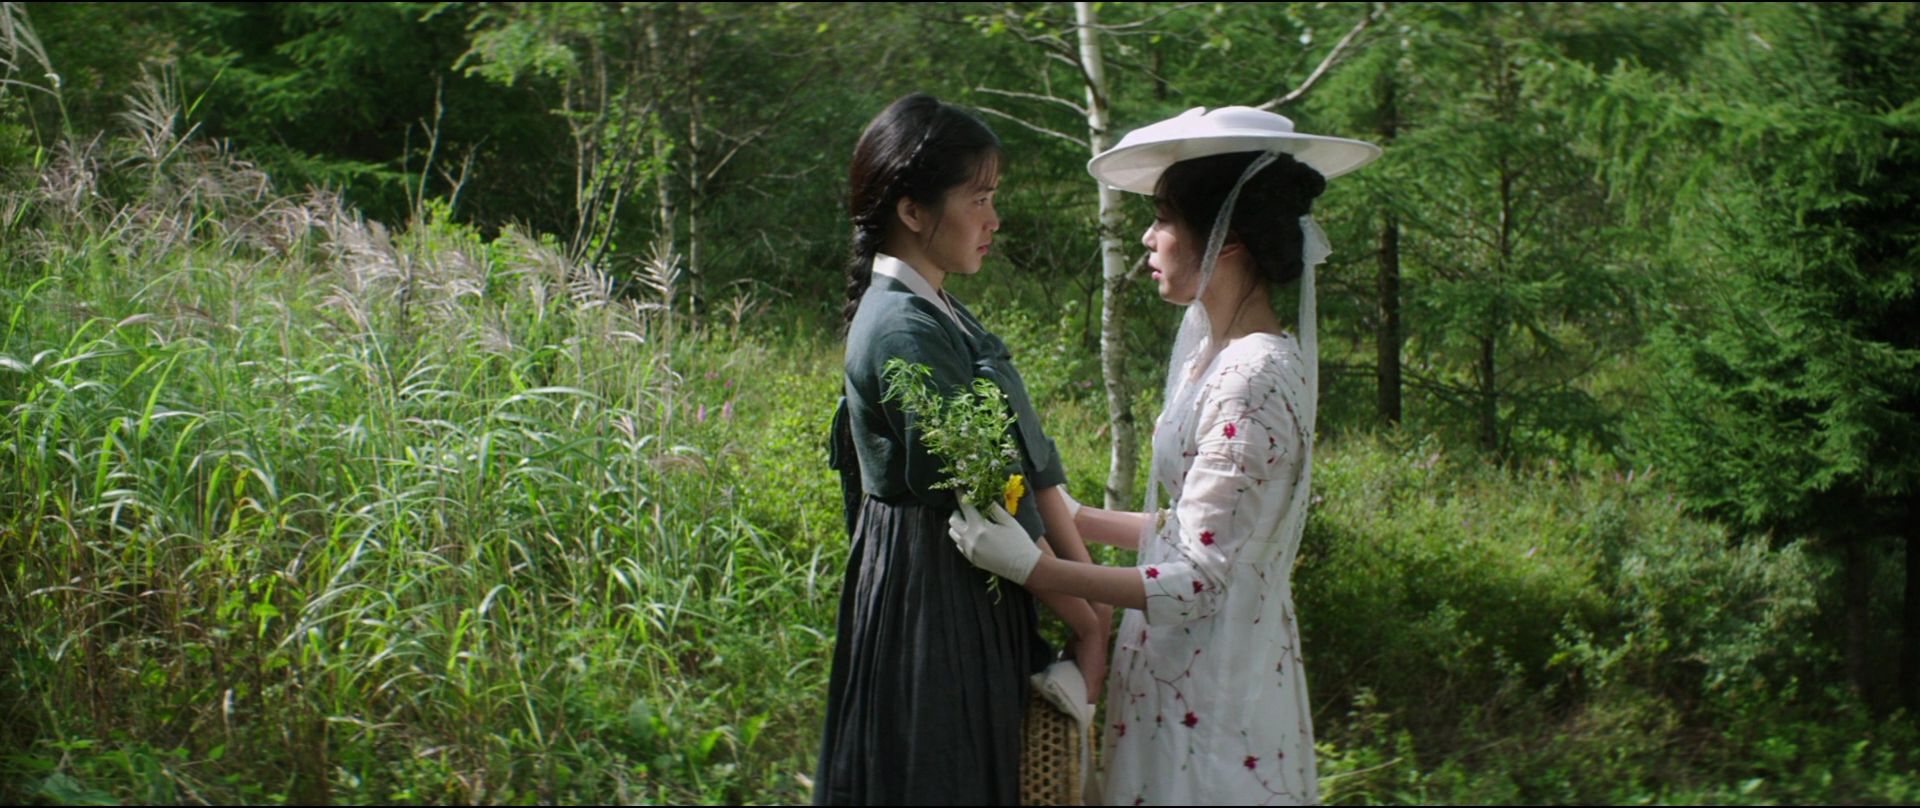 Cena do filme A Criada. Na imagem da esquerda para a direita, Sook-hee e Hideko, duas mulheres asiáticas de cabelos escuros. Sook-hee veste cinza e Hideko veste branco. Hideko segura Sook-hee pelos braços. Ao fundo, a mata verde com flores.